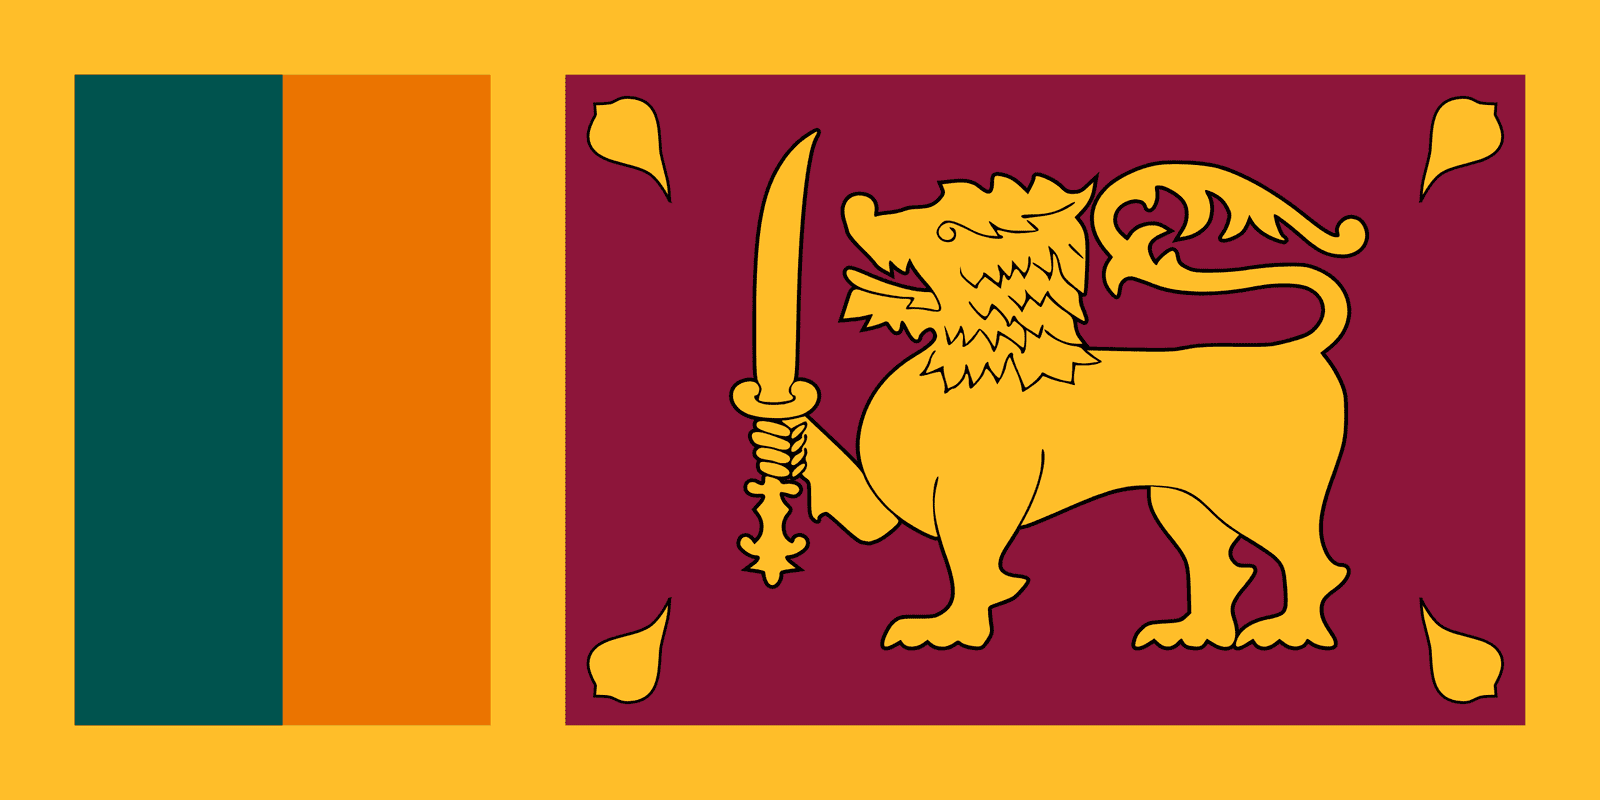 Sri Lanka - Powered by Eduhyme.com